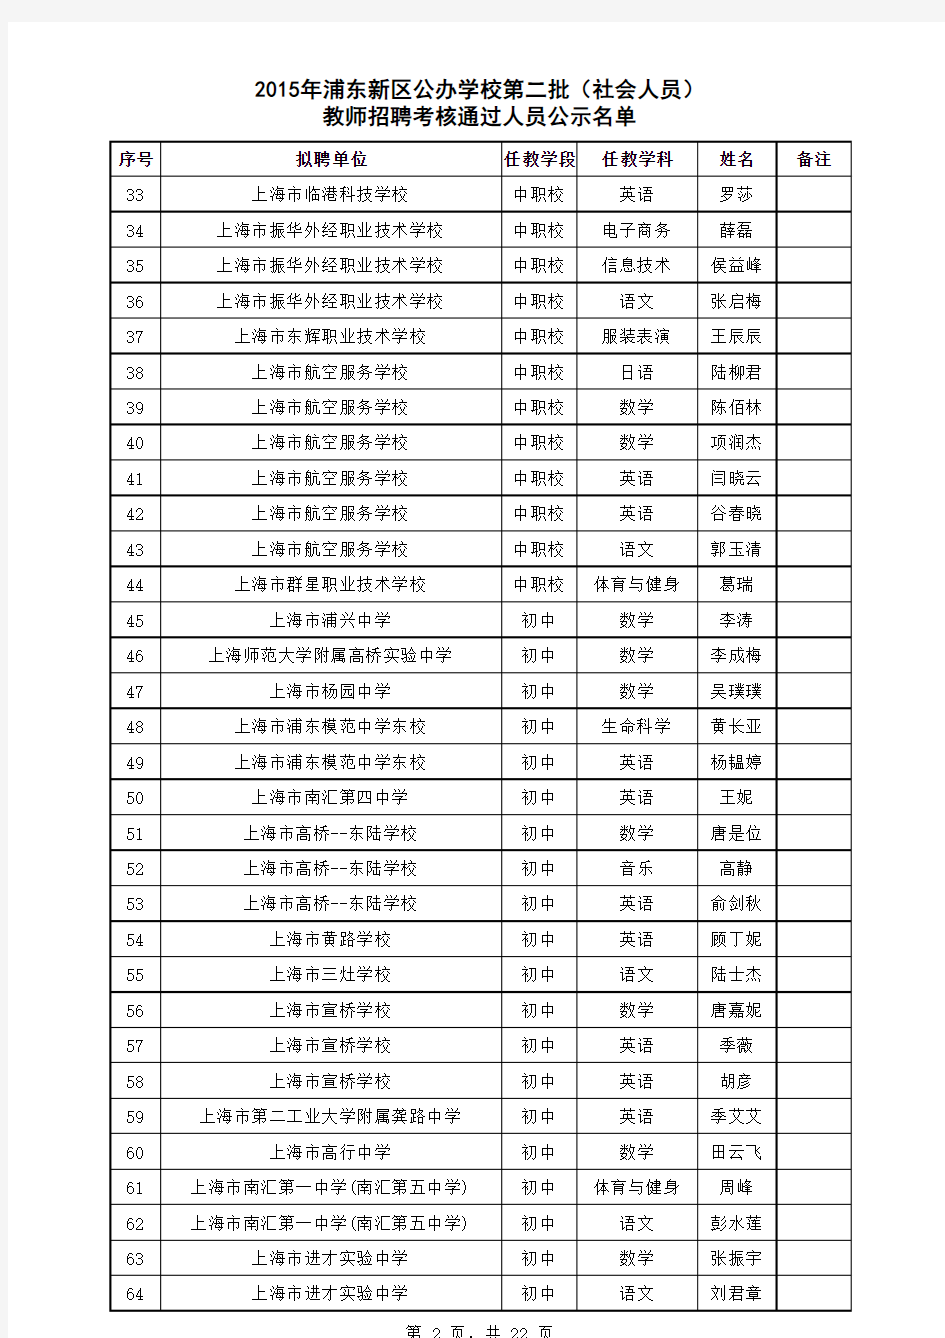 2015年浦东新区公办学校第二批教师招聘考核通过人员名单公示